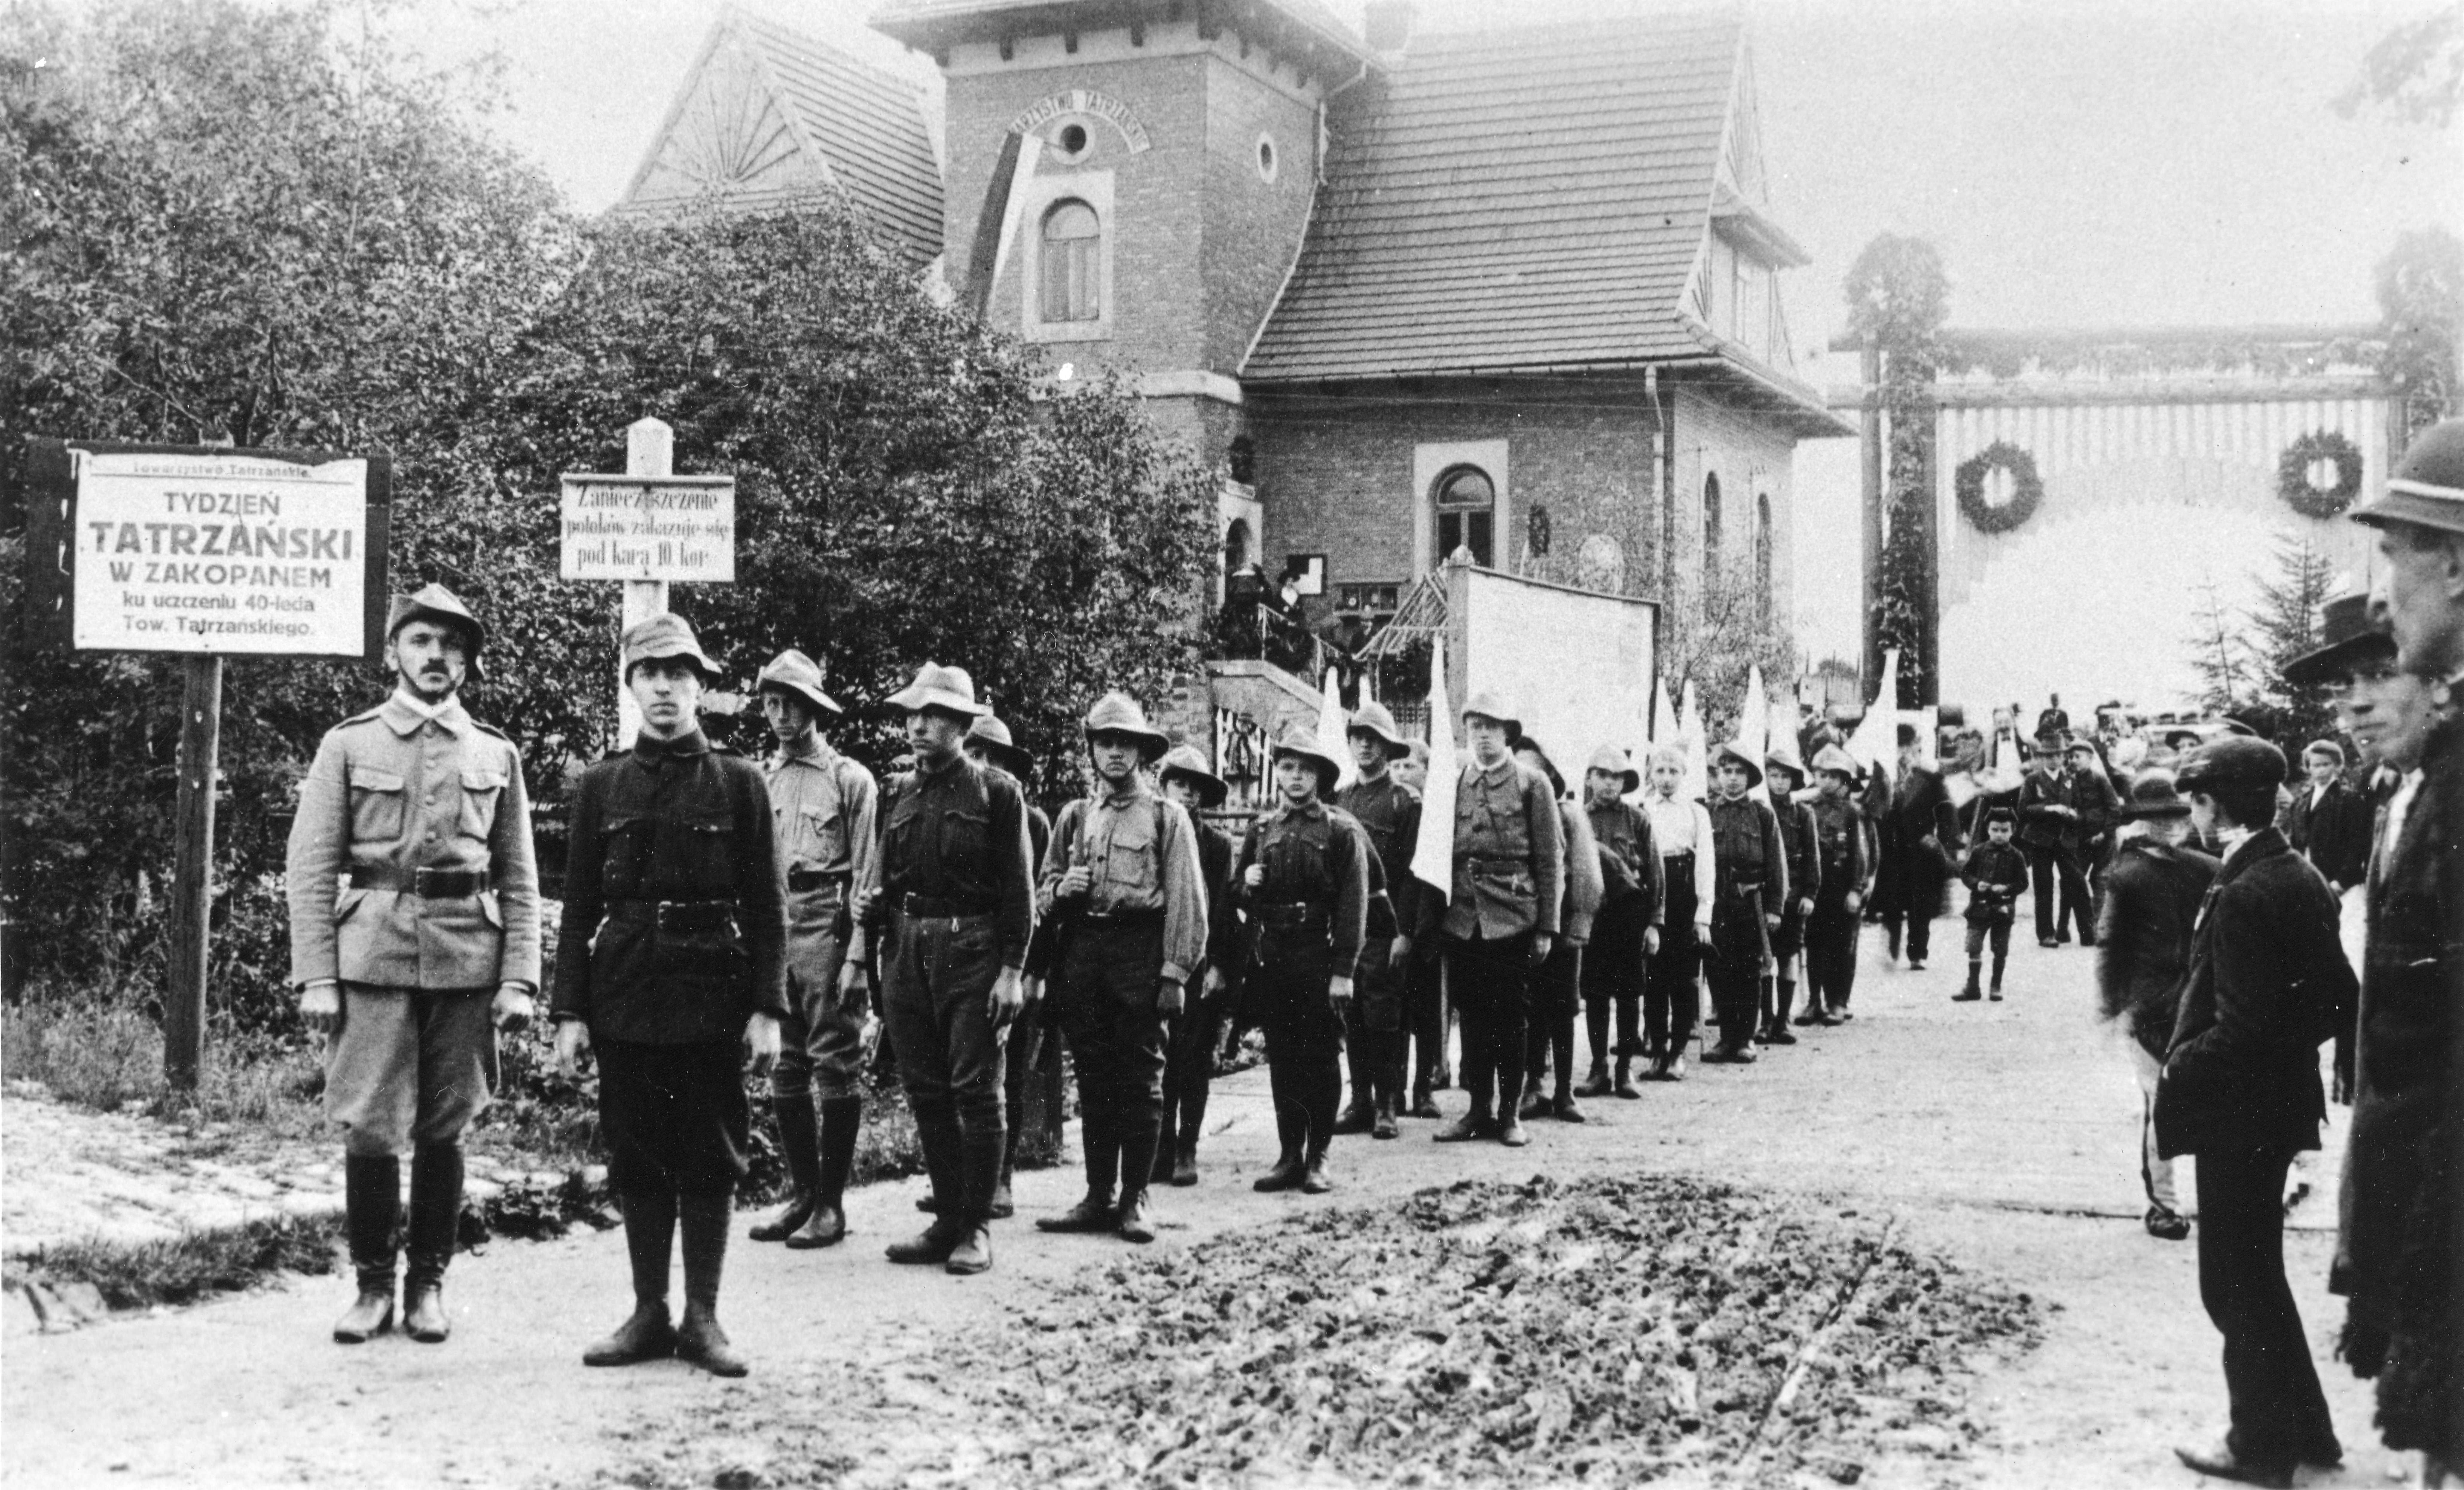 Uroczystość poświęcenia kamienia węgielnego  pod nowy gmach Muzeum Tatrzańskiego, 3 sierpnia 1913 r.  – drużyna skautów, pierwszy od lewej Karol Pawluś (w zbiorach Muzeum Tatrzańskiego w Zakopanem)